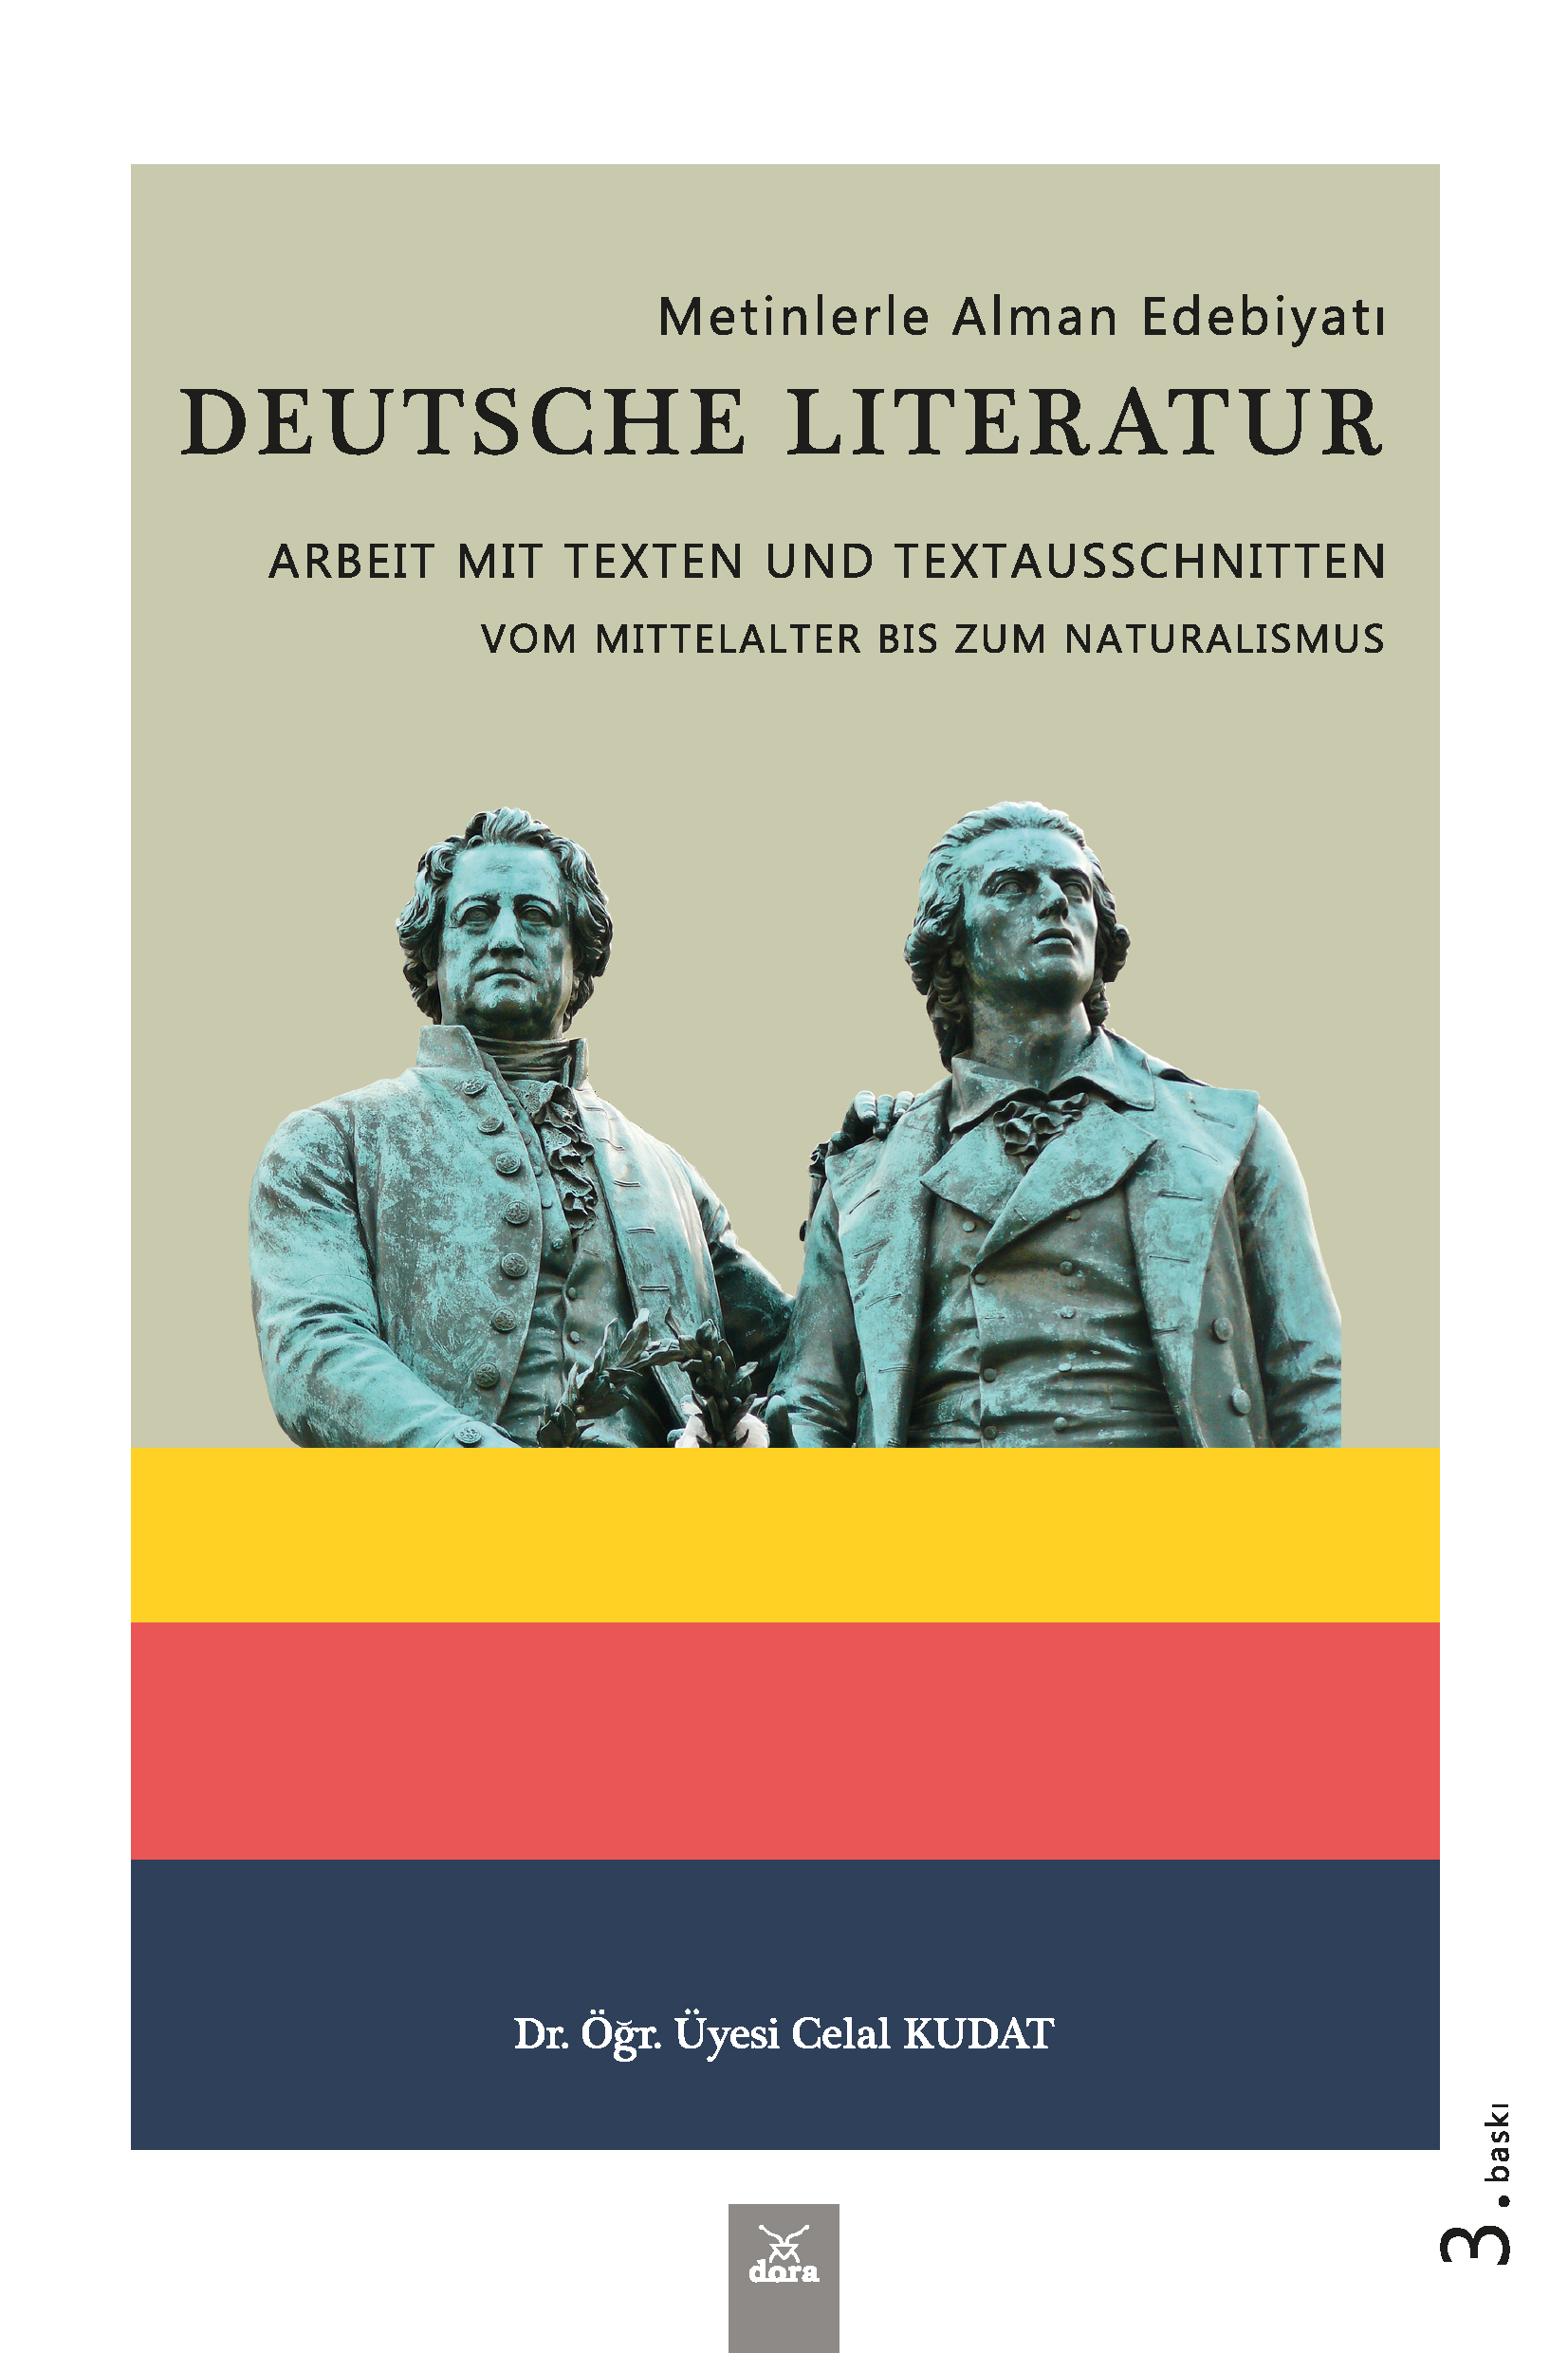 Metinlerle Alman Edebiyatı - Deutsche Literatur Arbeit Mit Texten und Textausschnitten | 218 | Dora Yayıncılık